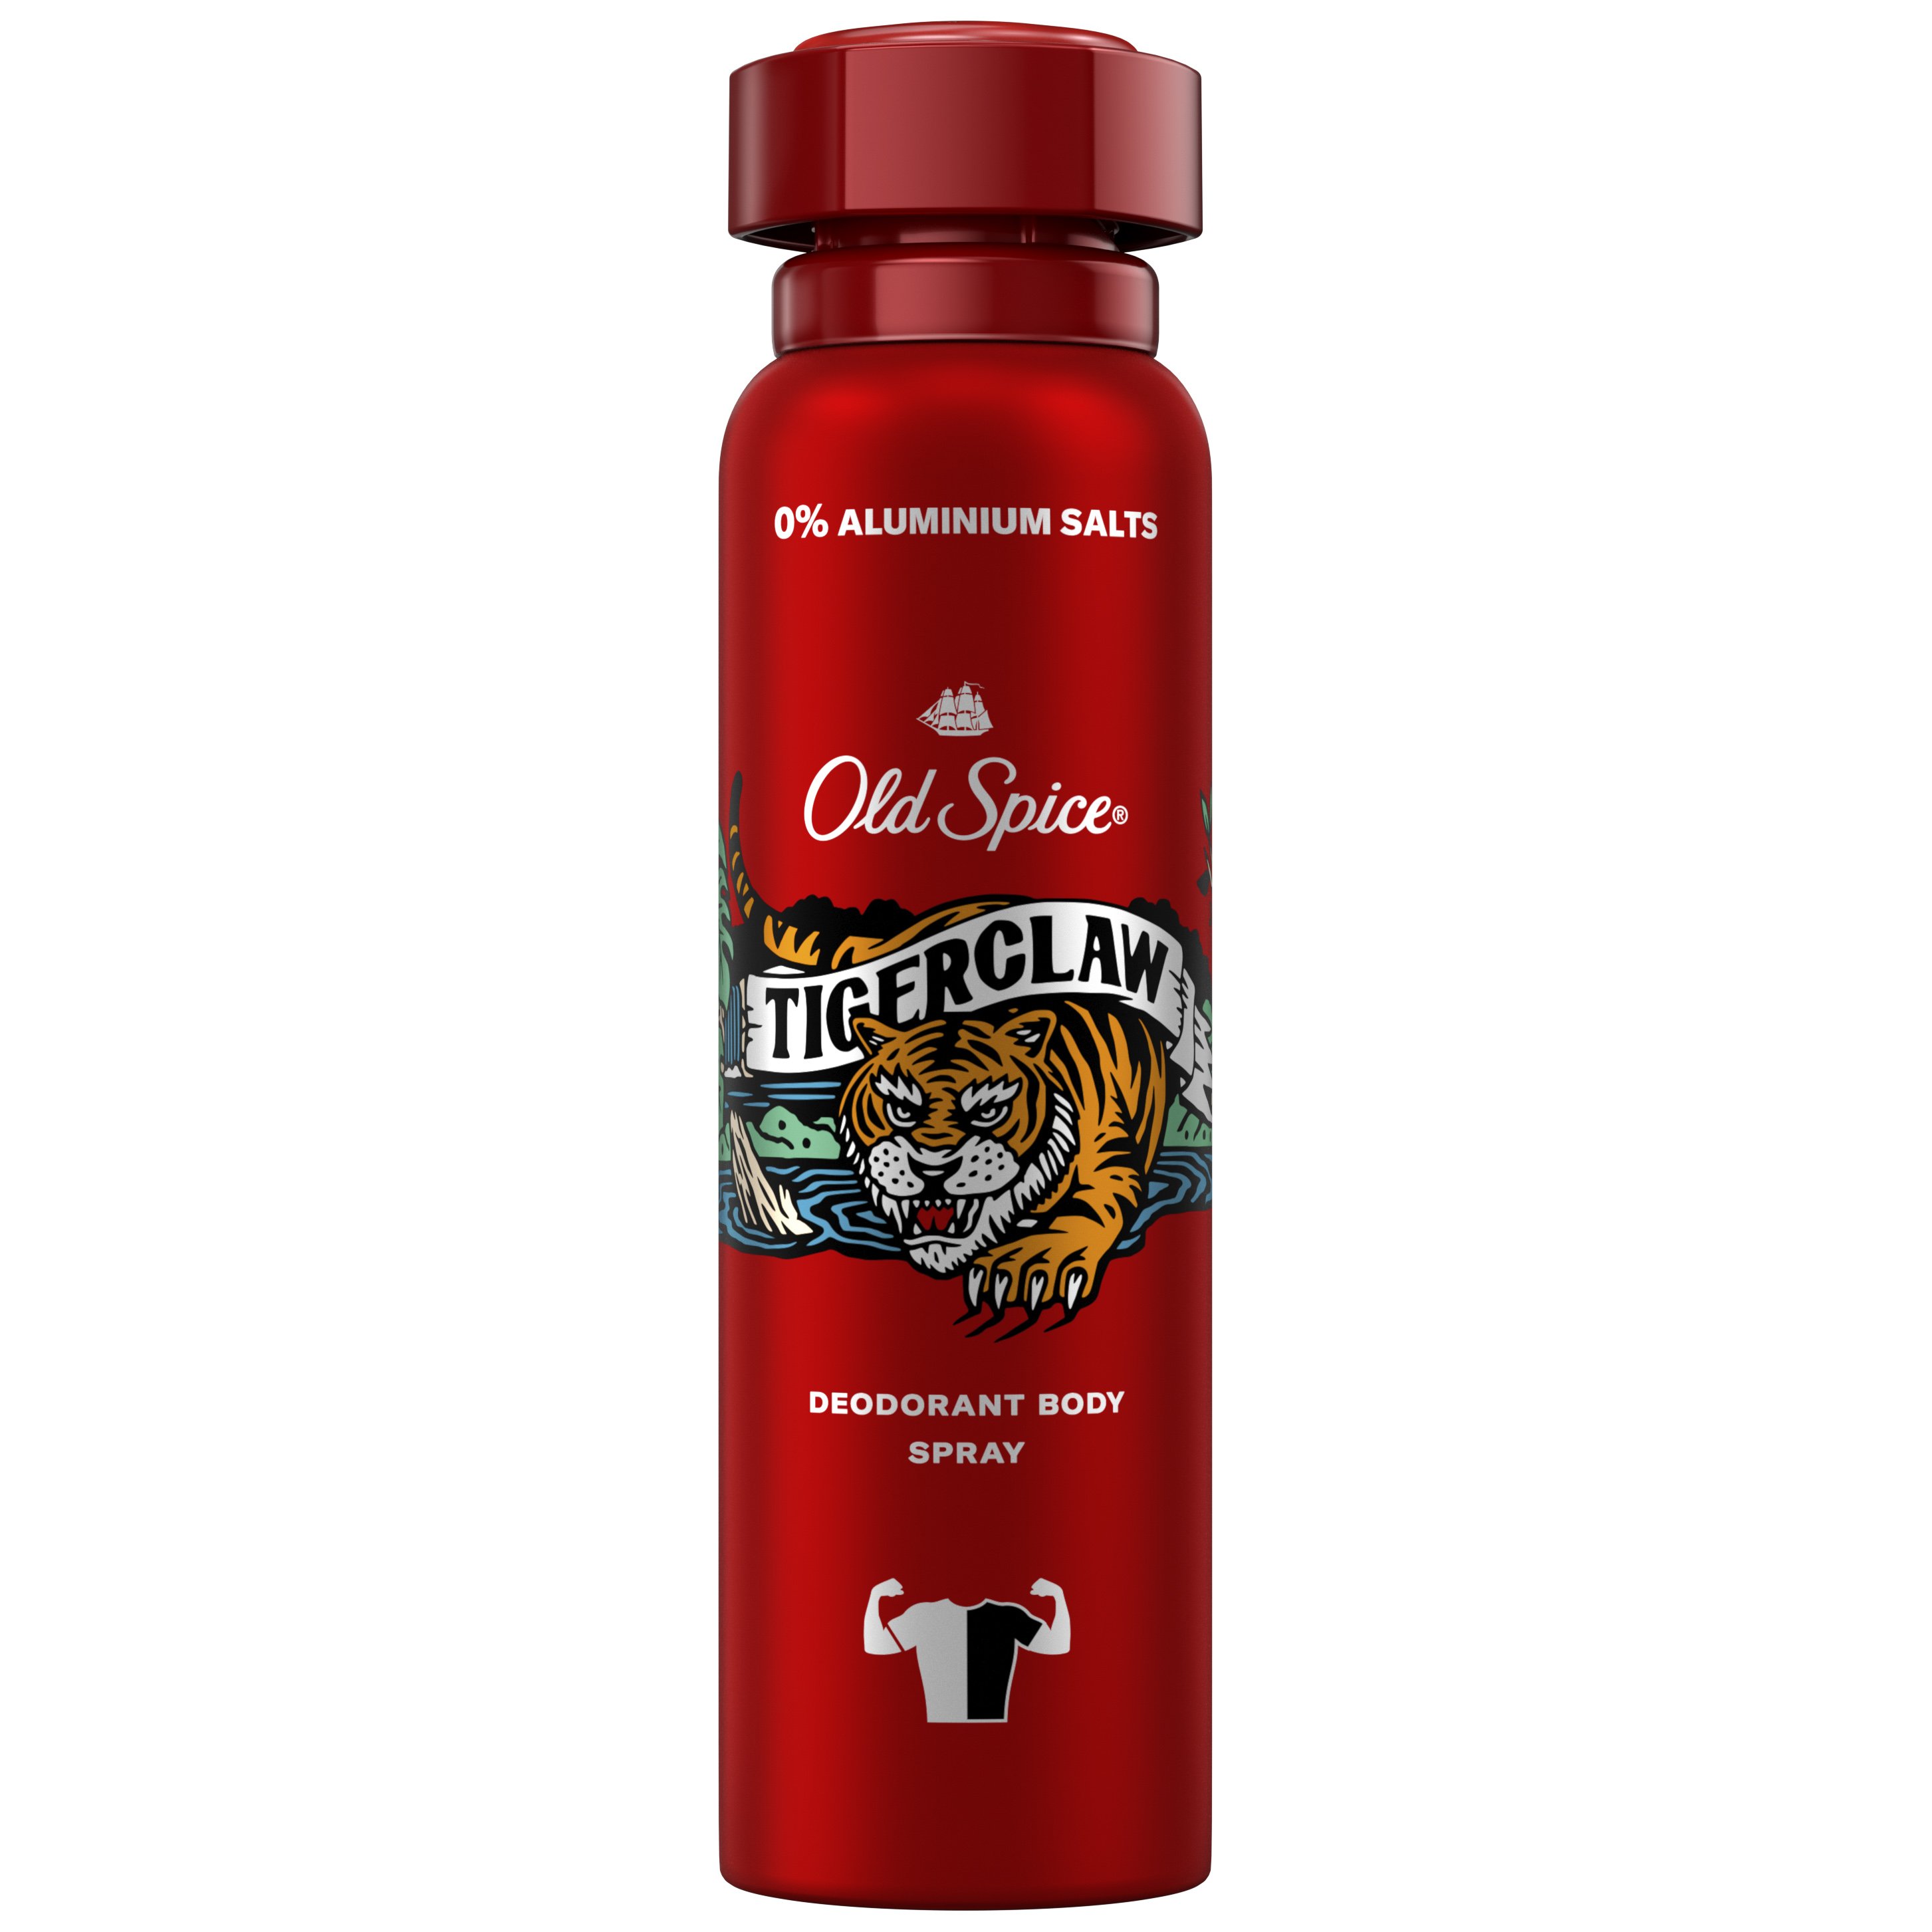 Old Spice Tiger Claw Deodorant Body Spray Αποσμητικό Spray Σώματος για Άνδρες 150ml